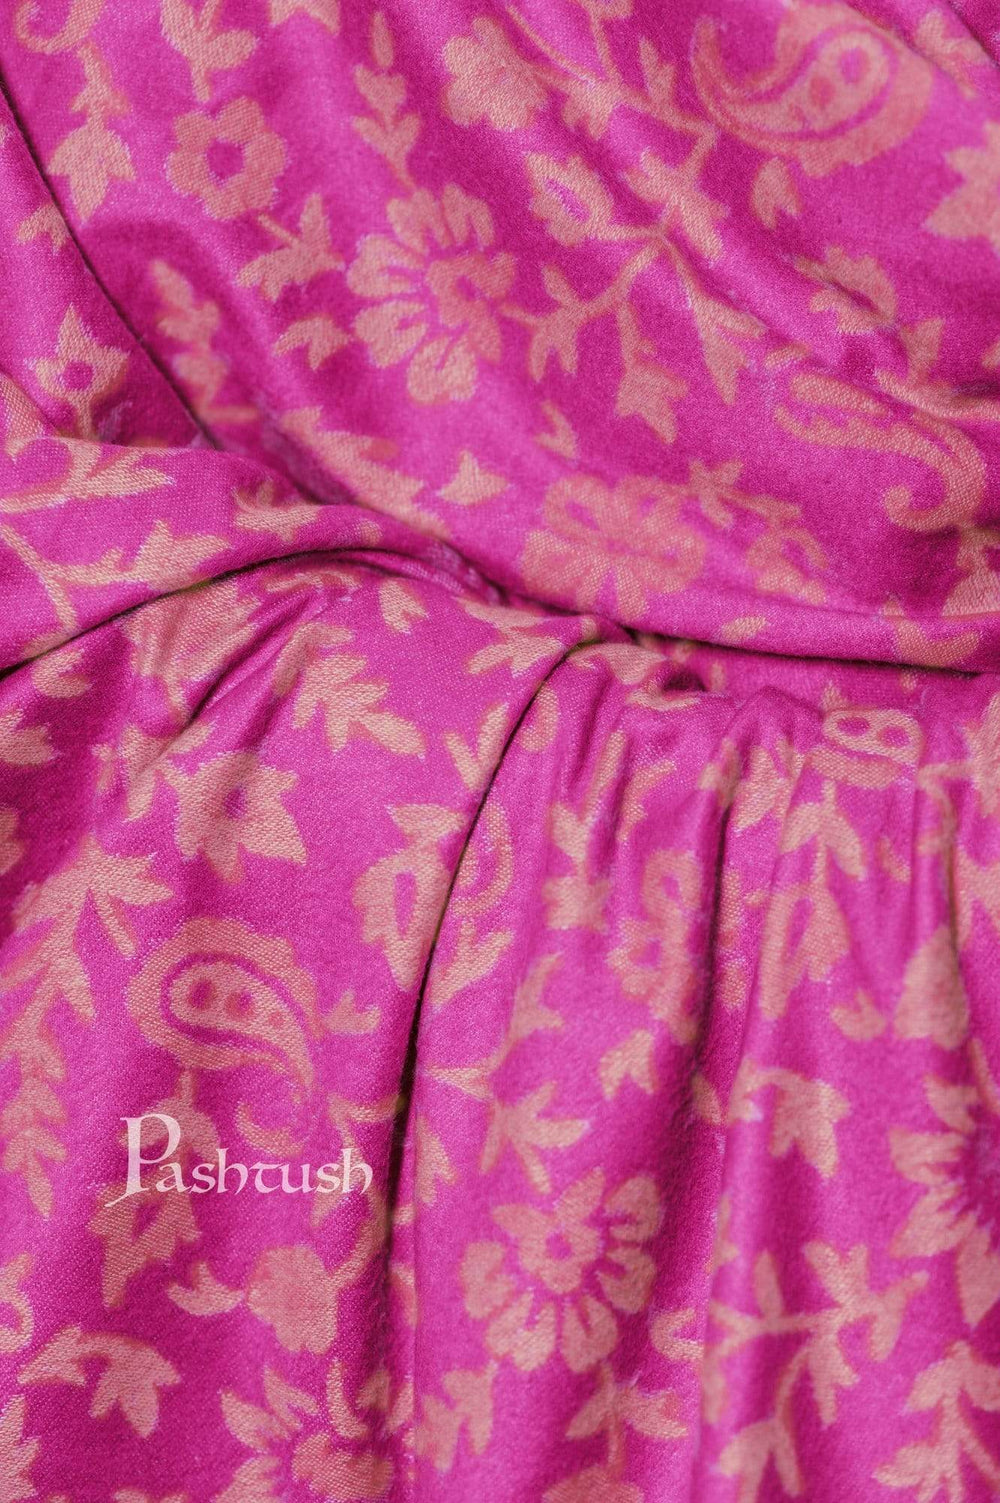 Pashtush India 100x200 Pashtush Women's Soft Bamboo Shawl, Thick and Warm